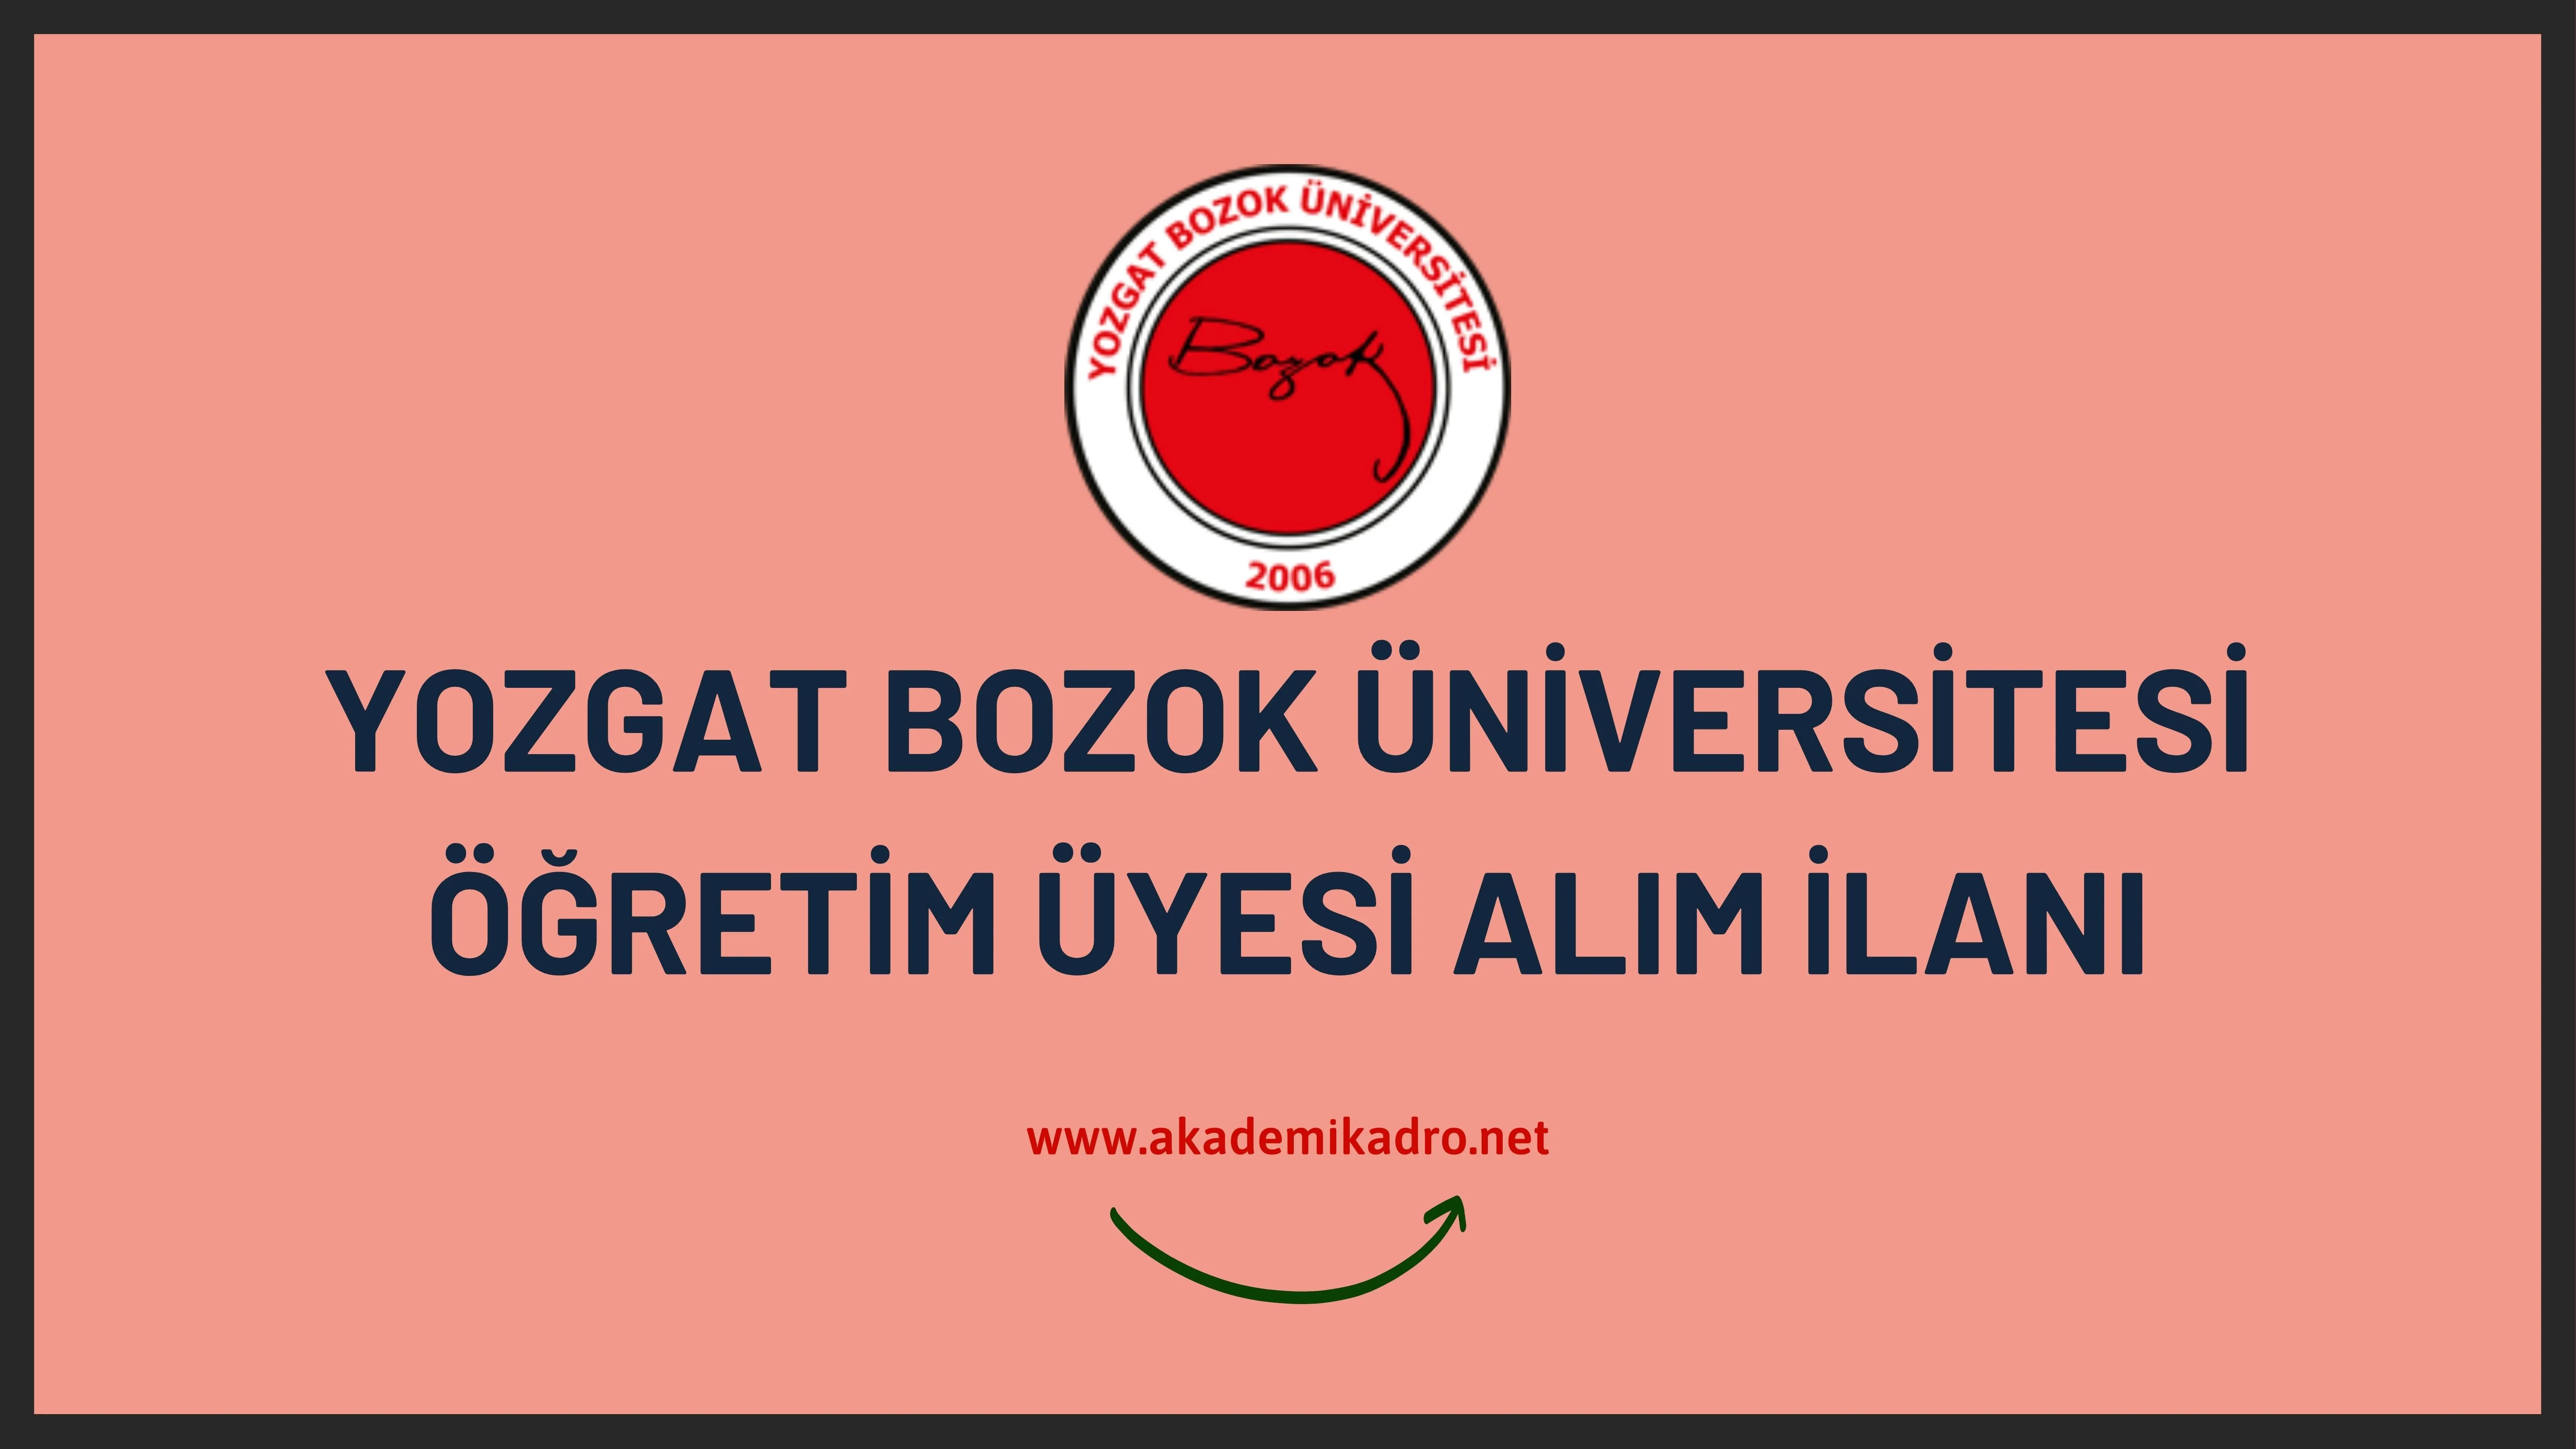 Yozgat Bozok Üniversitesi akademik personel alacak.